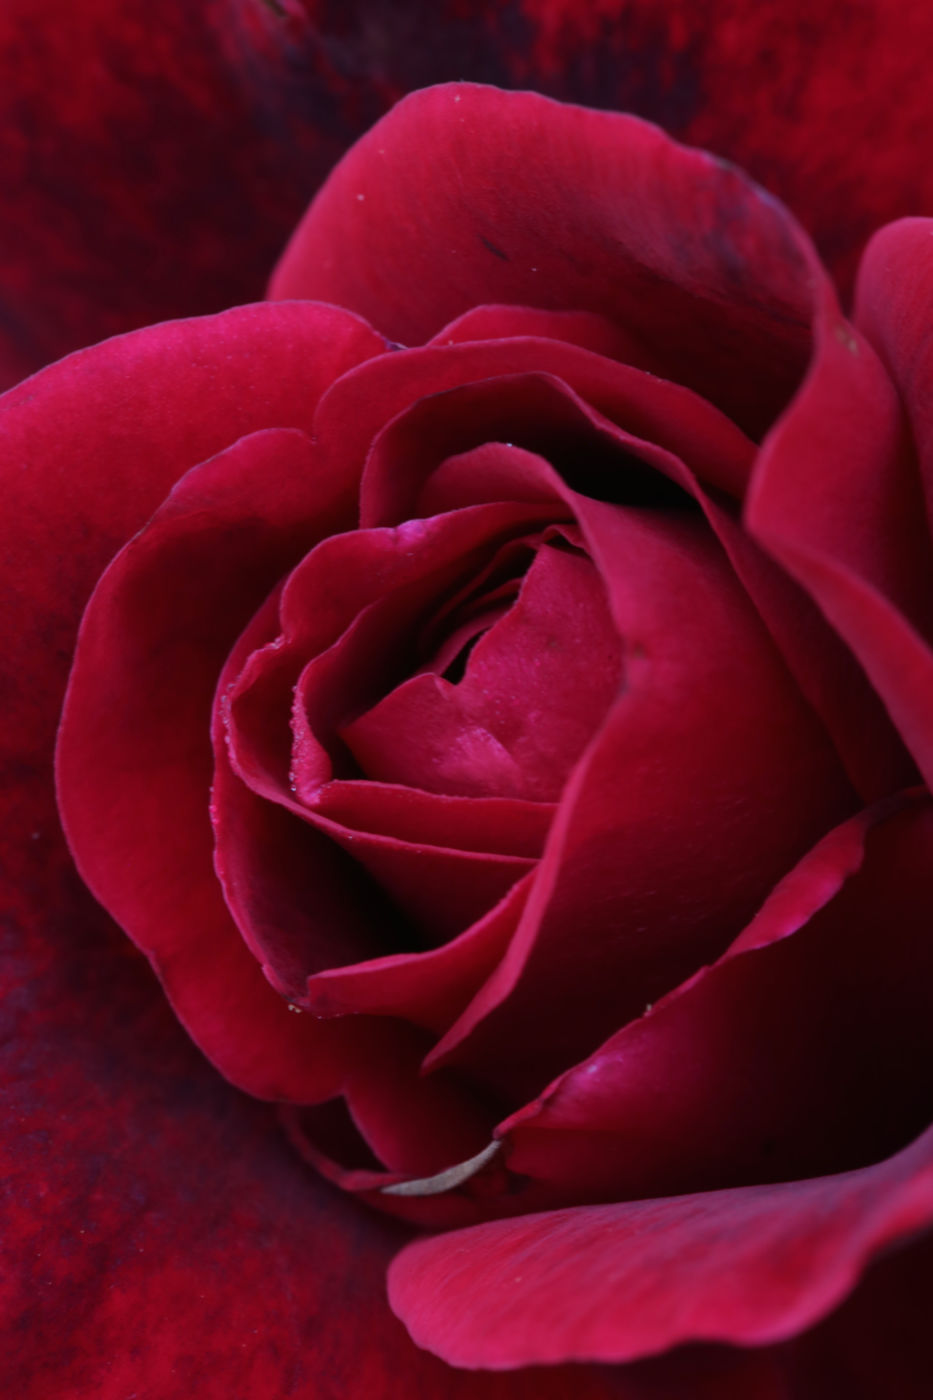 Rose (Rosa spp.).